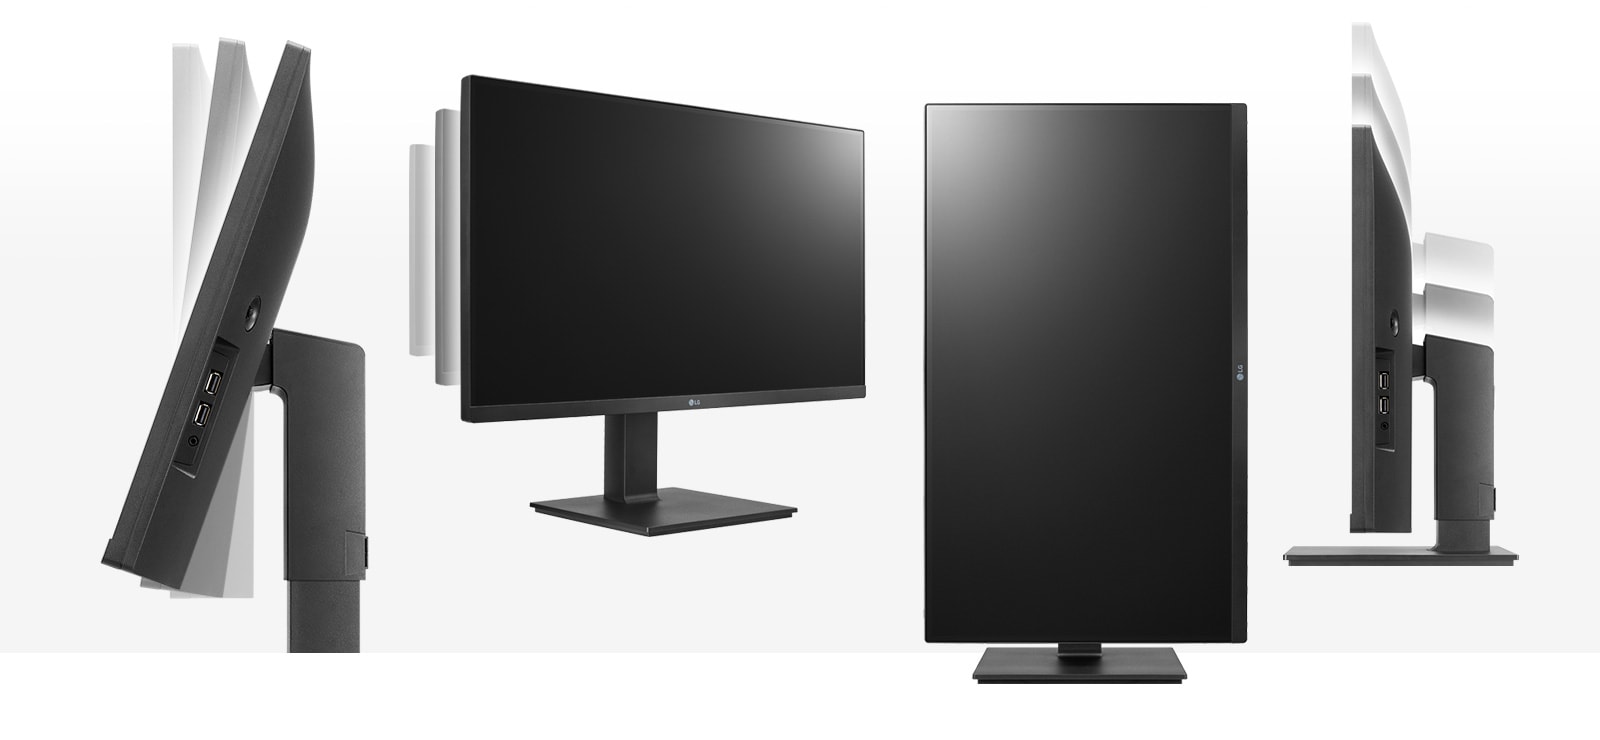 Lg 27bq75qbb monitor pc 68,6 cm (27) 2560 x 1440 pixel quad hd